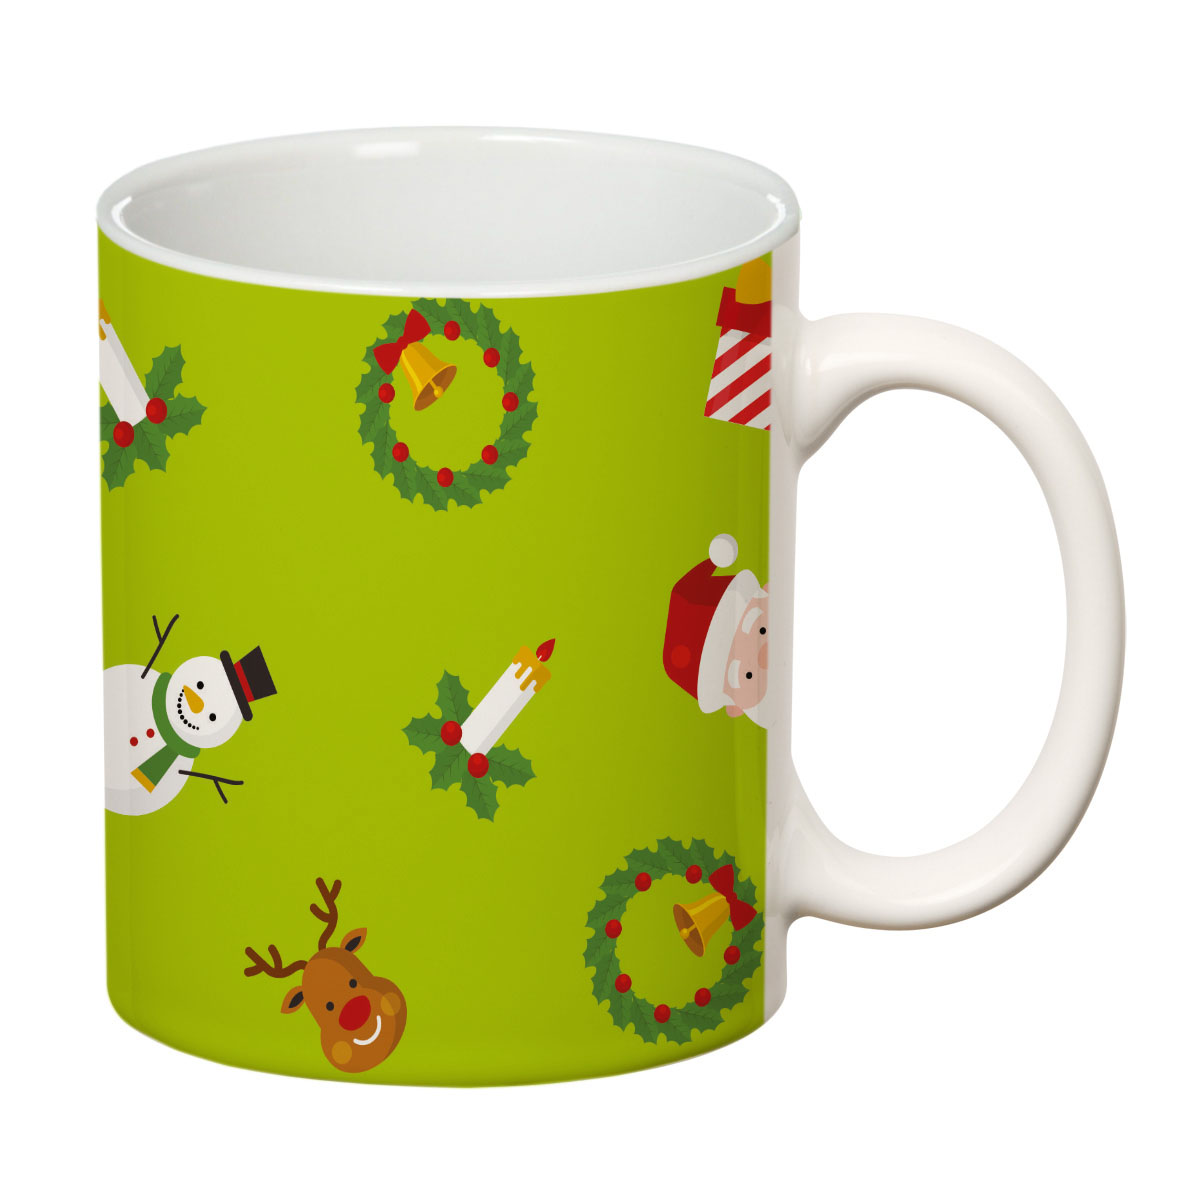 ORKA Coffee Mug 2 Christmas Theme 11 Oz   